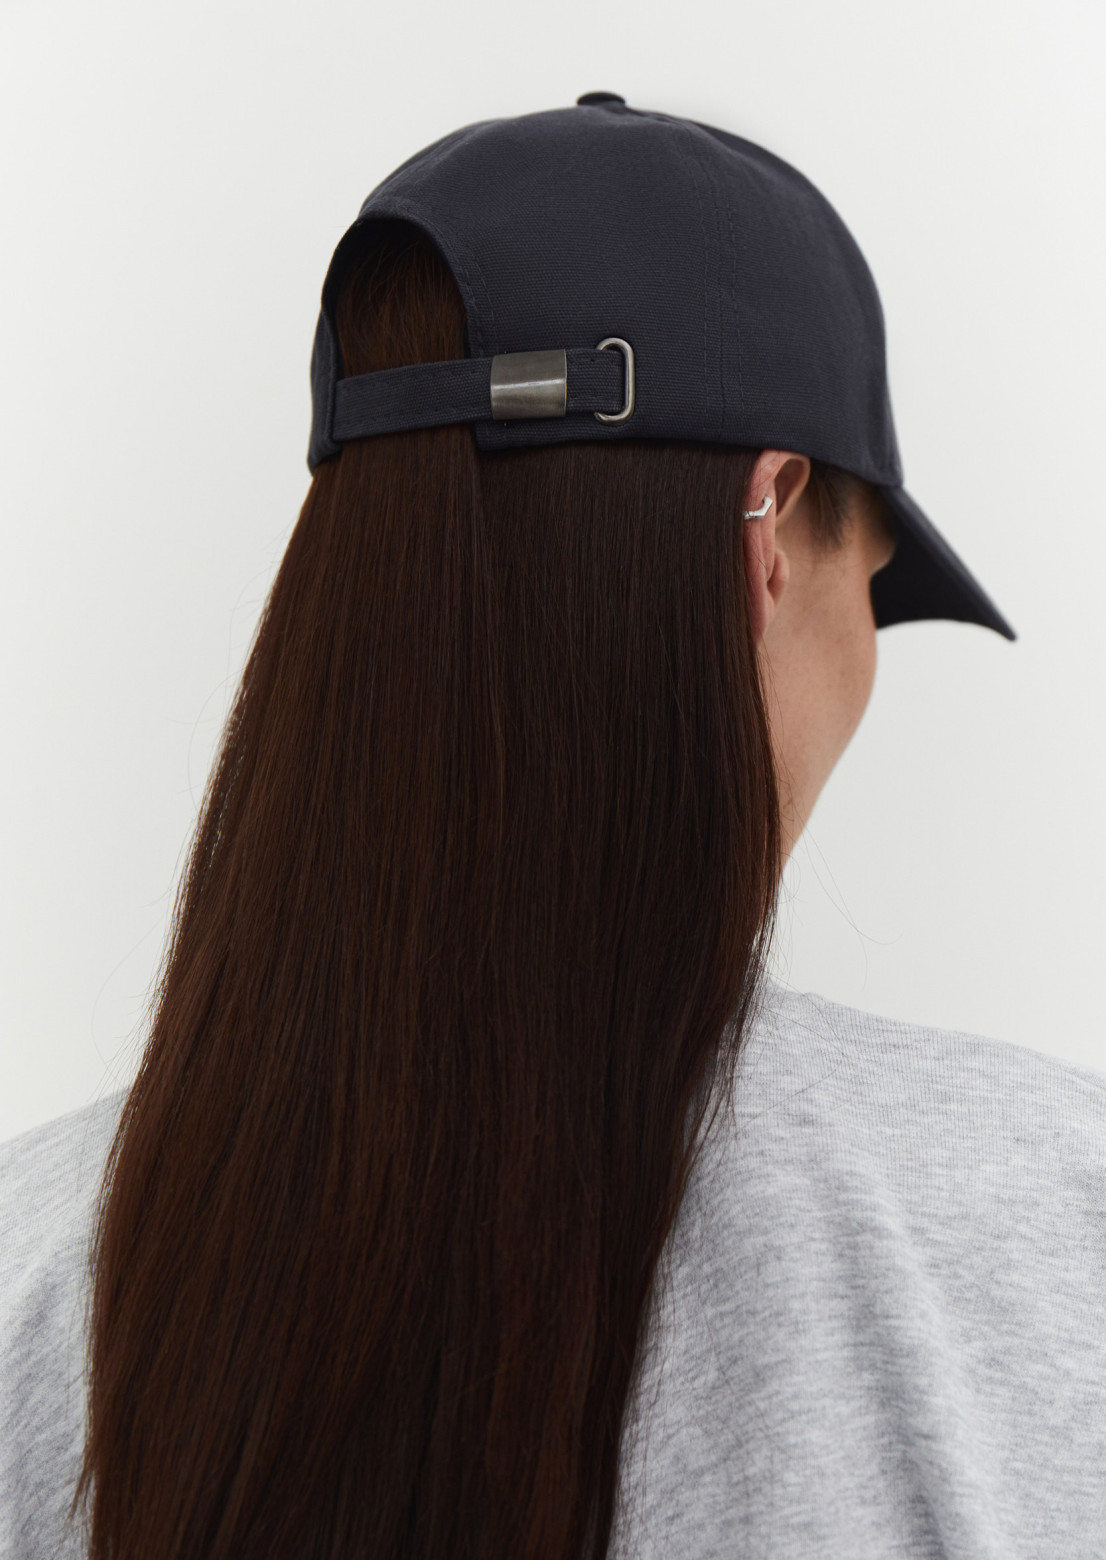 Dark grey baseball cap